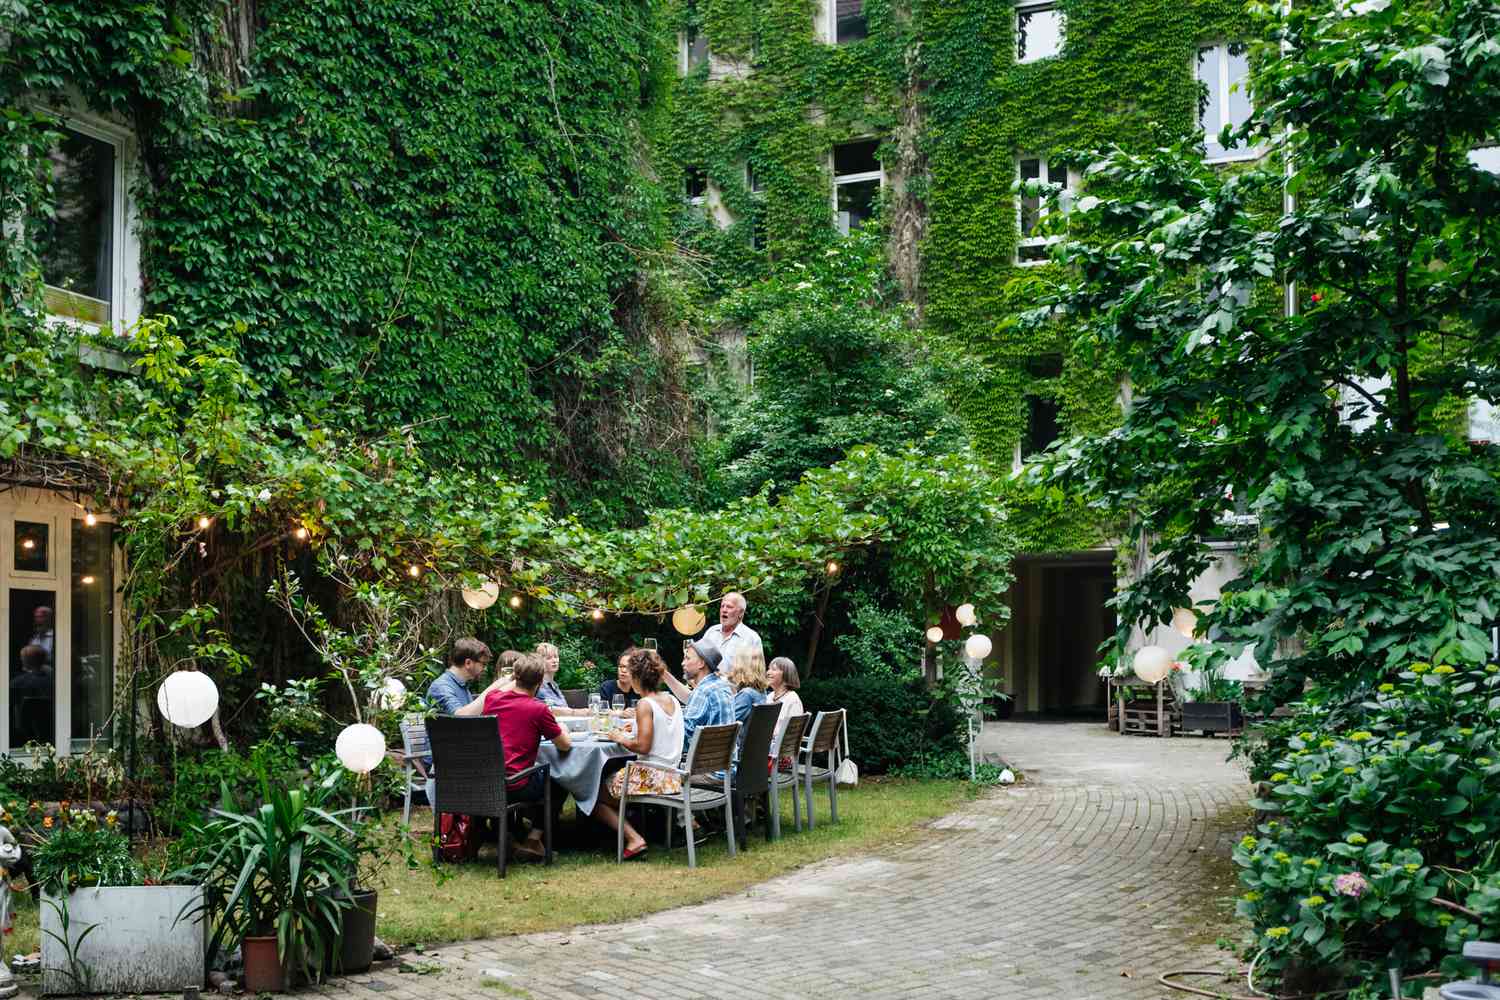 Menschen beim Essen im Freien mit üppigen Pflanzen um sie herum